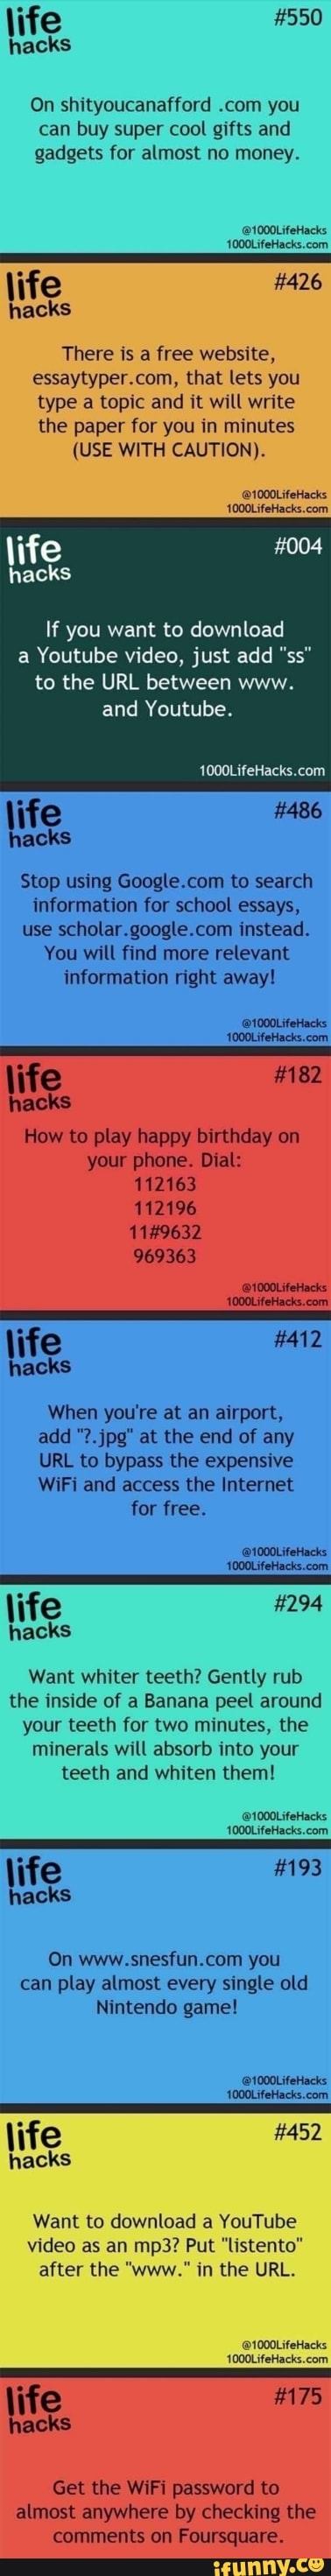 Photo (1000 Life Hacks)  1000 life hacks, Life hacks websites